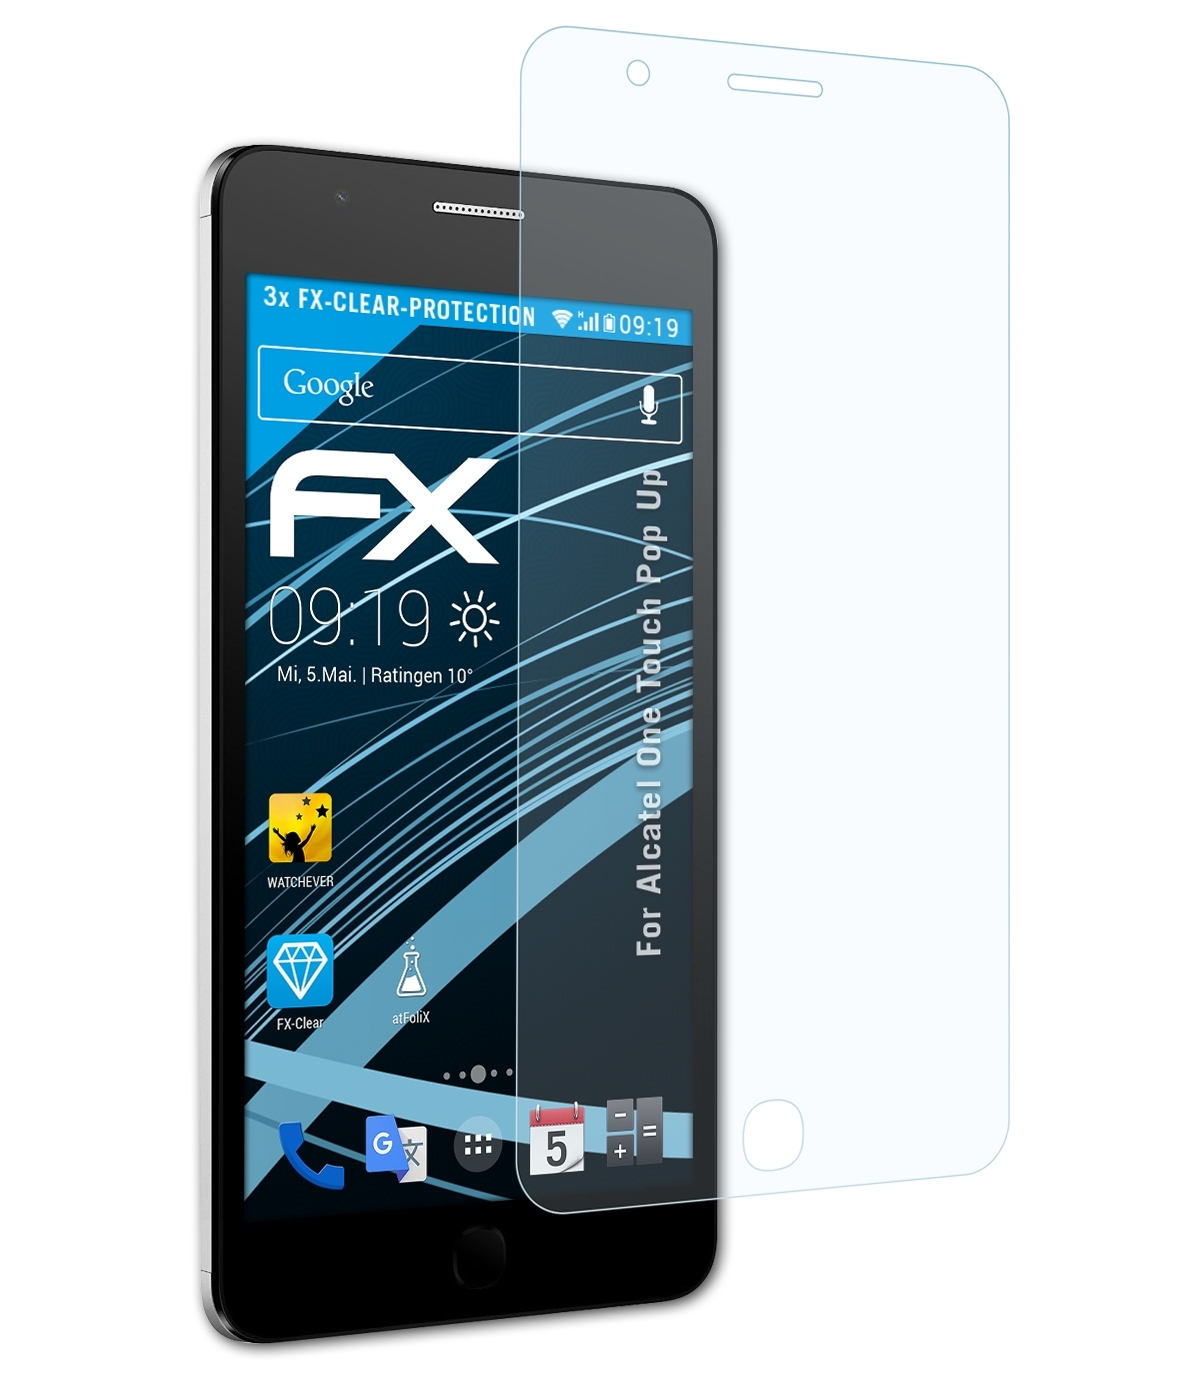 One Touch Displayschutz(für ATFOLIX 3x FX-Clear Alcatel Pop Up)